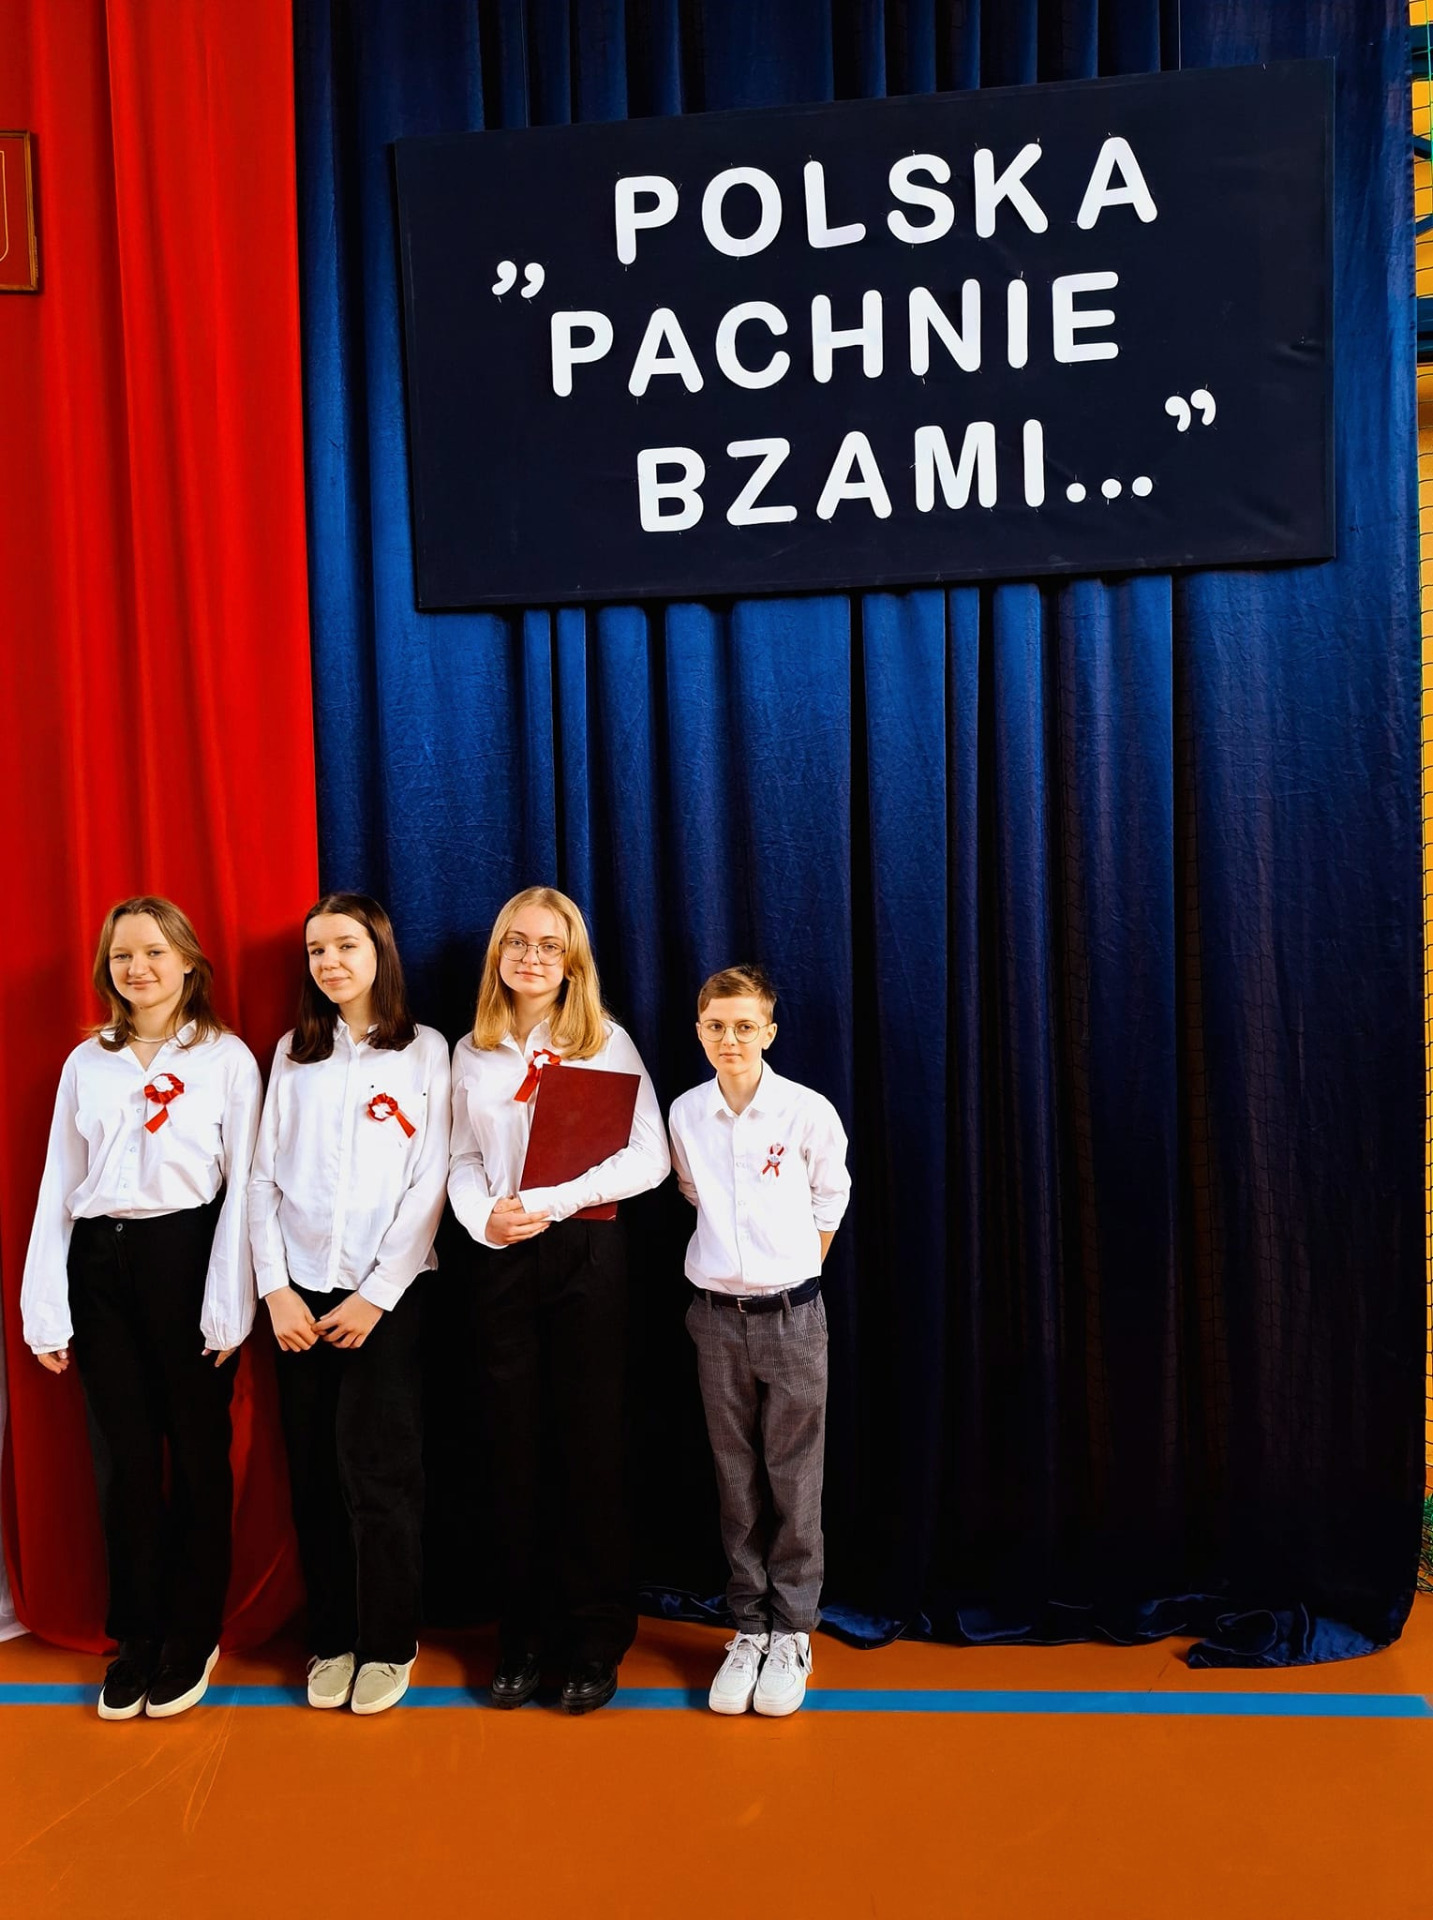 "POLSKA PACHNIE BZAMI" - Obrazek 1